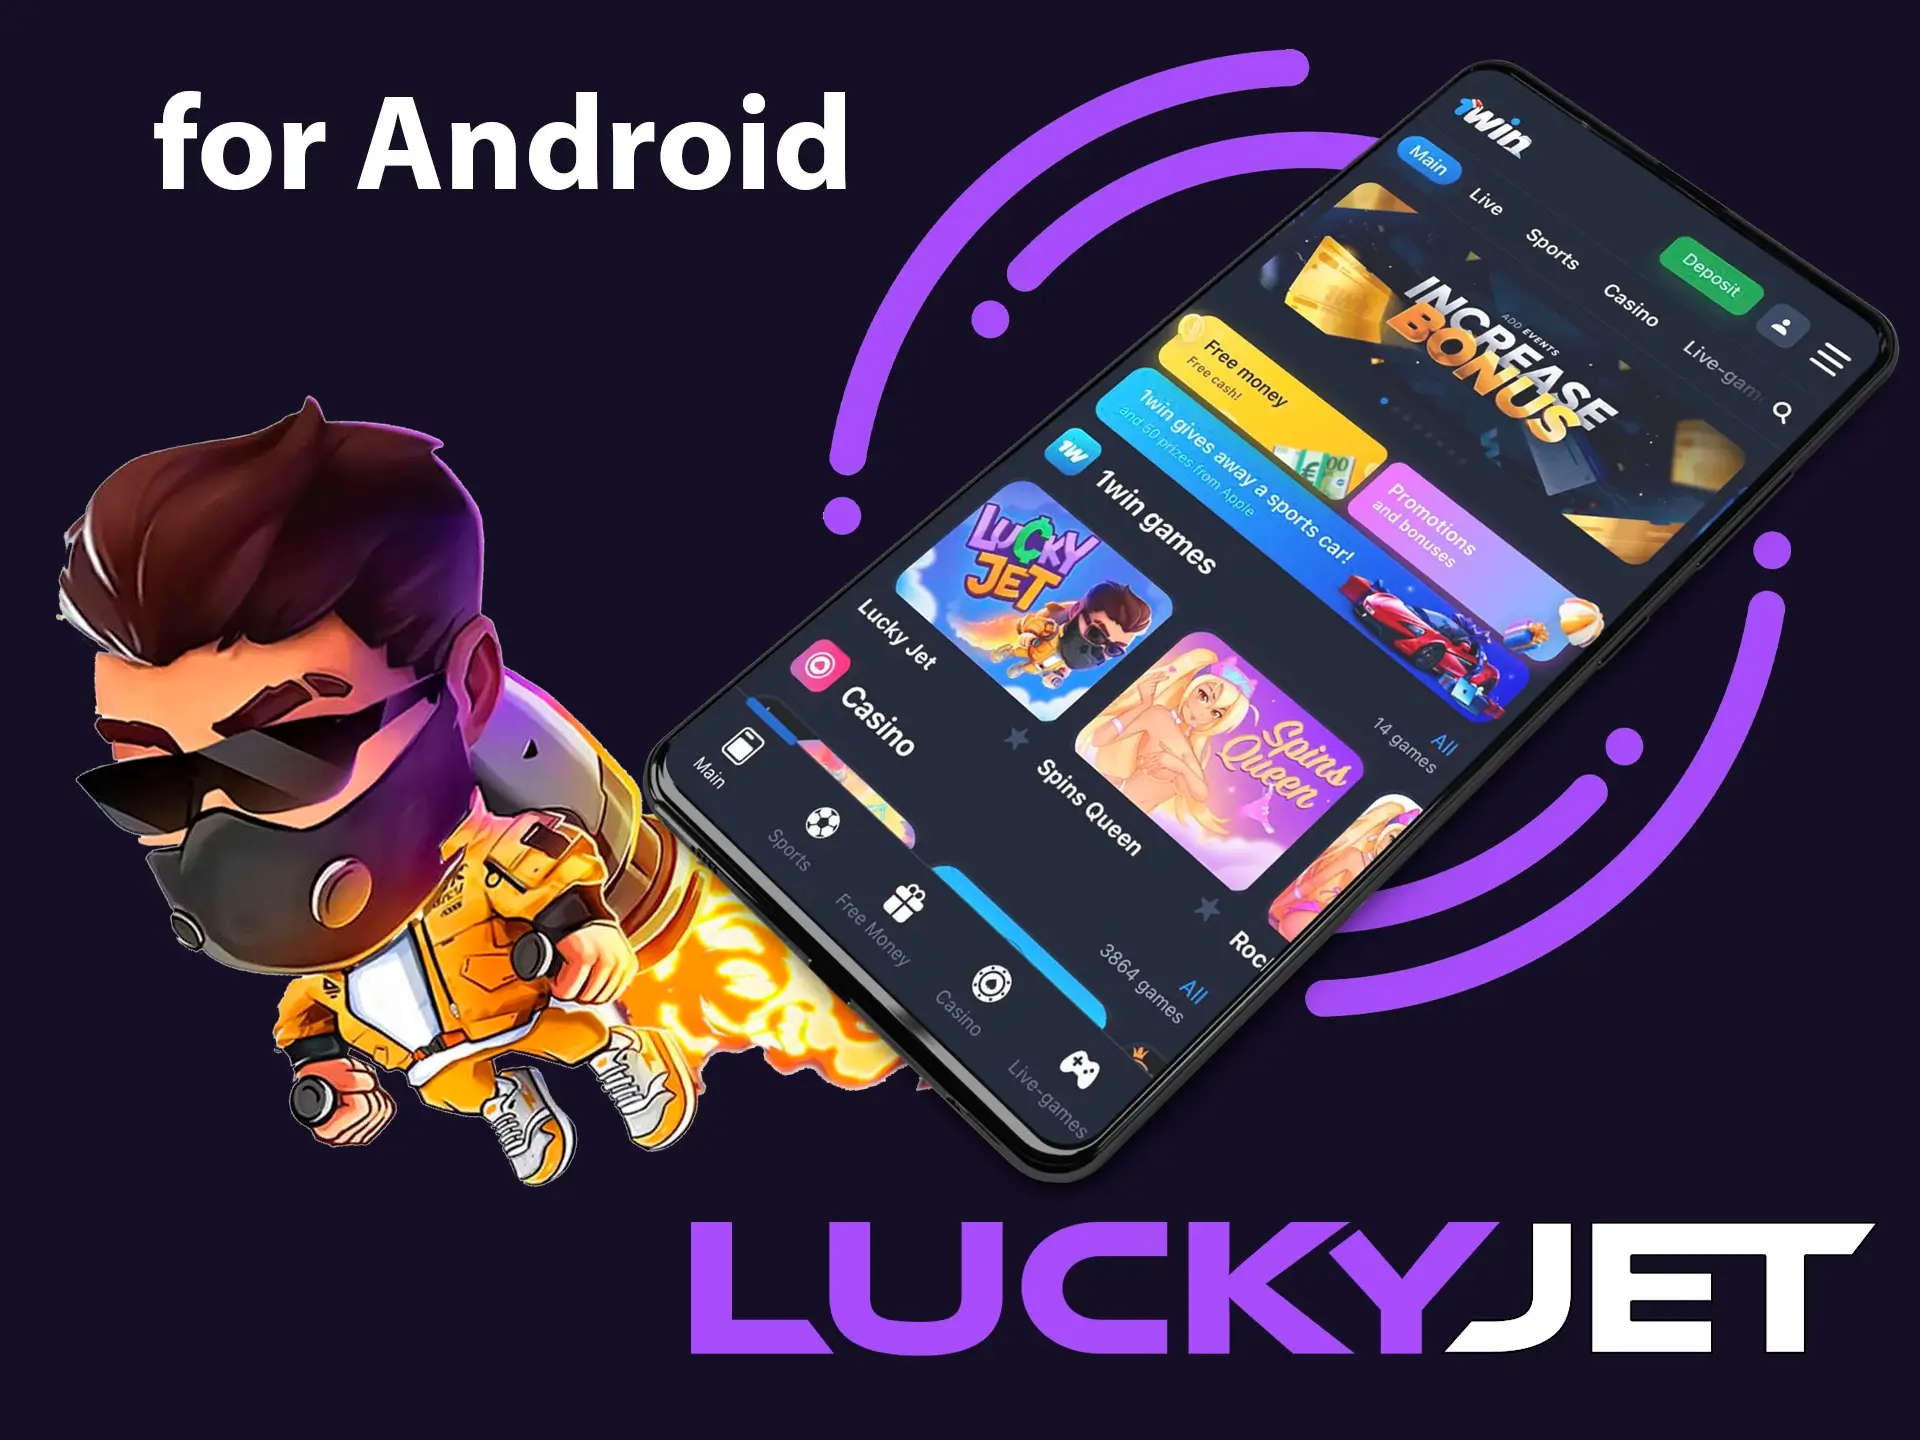 La aplicación Lucky Jet para Android se adapta perfectamente y ofrece una calidad excelente.